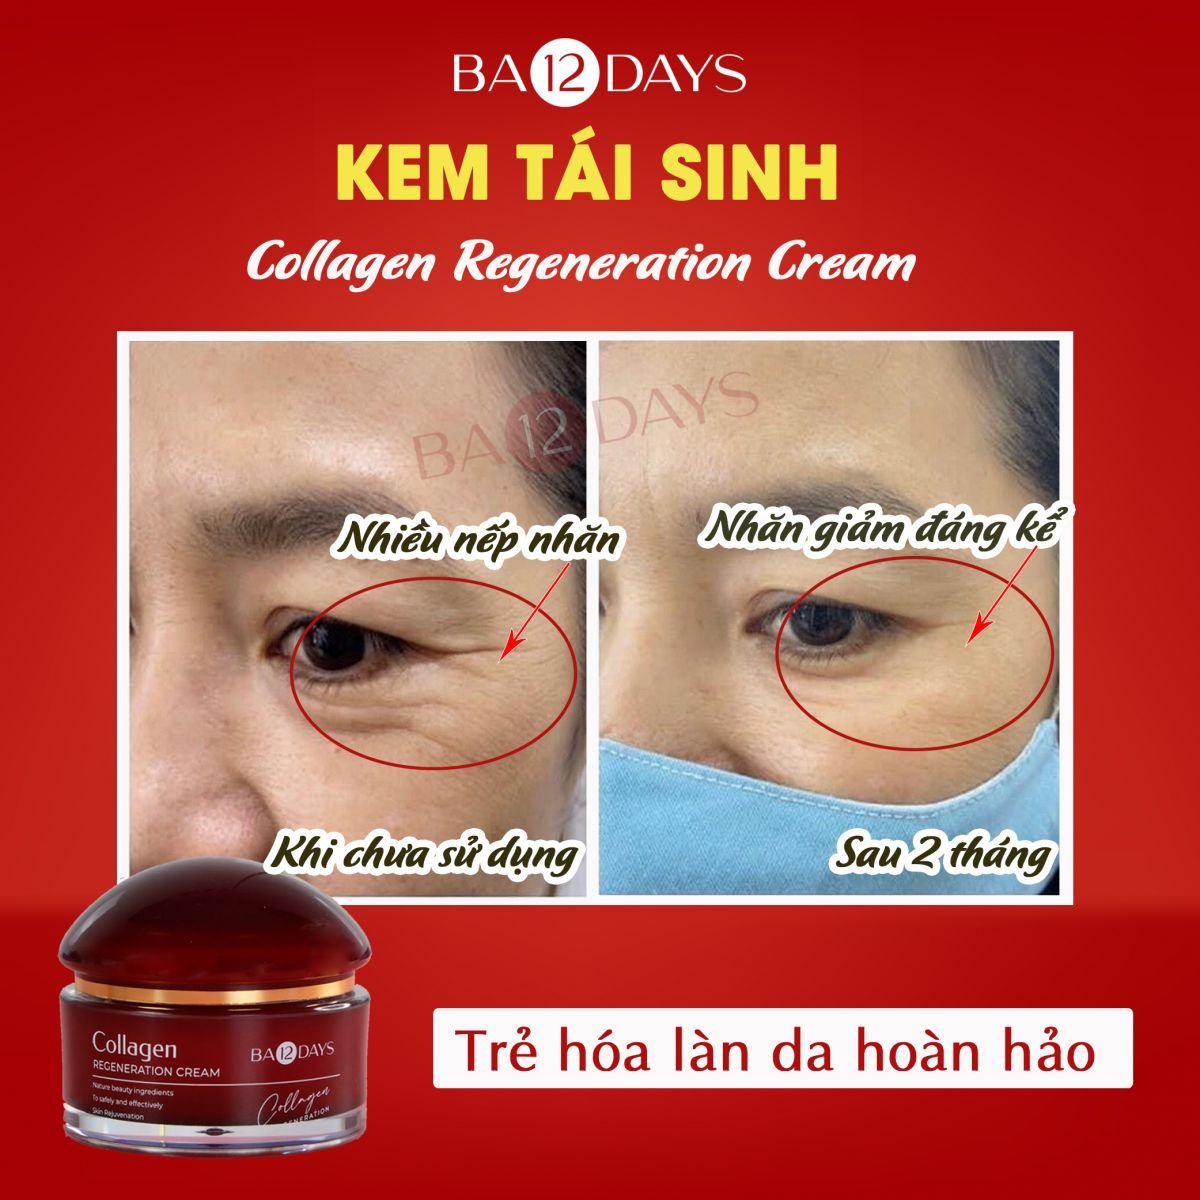 kem dưỡng tái tạo da nào tốt bằng kem dưỡng tái sinh Collagen Regeneration Cream Ba12days Cosmetics, giúp giảm các rãnh nhăn, vết chân chim trên khóe mắt